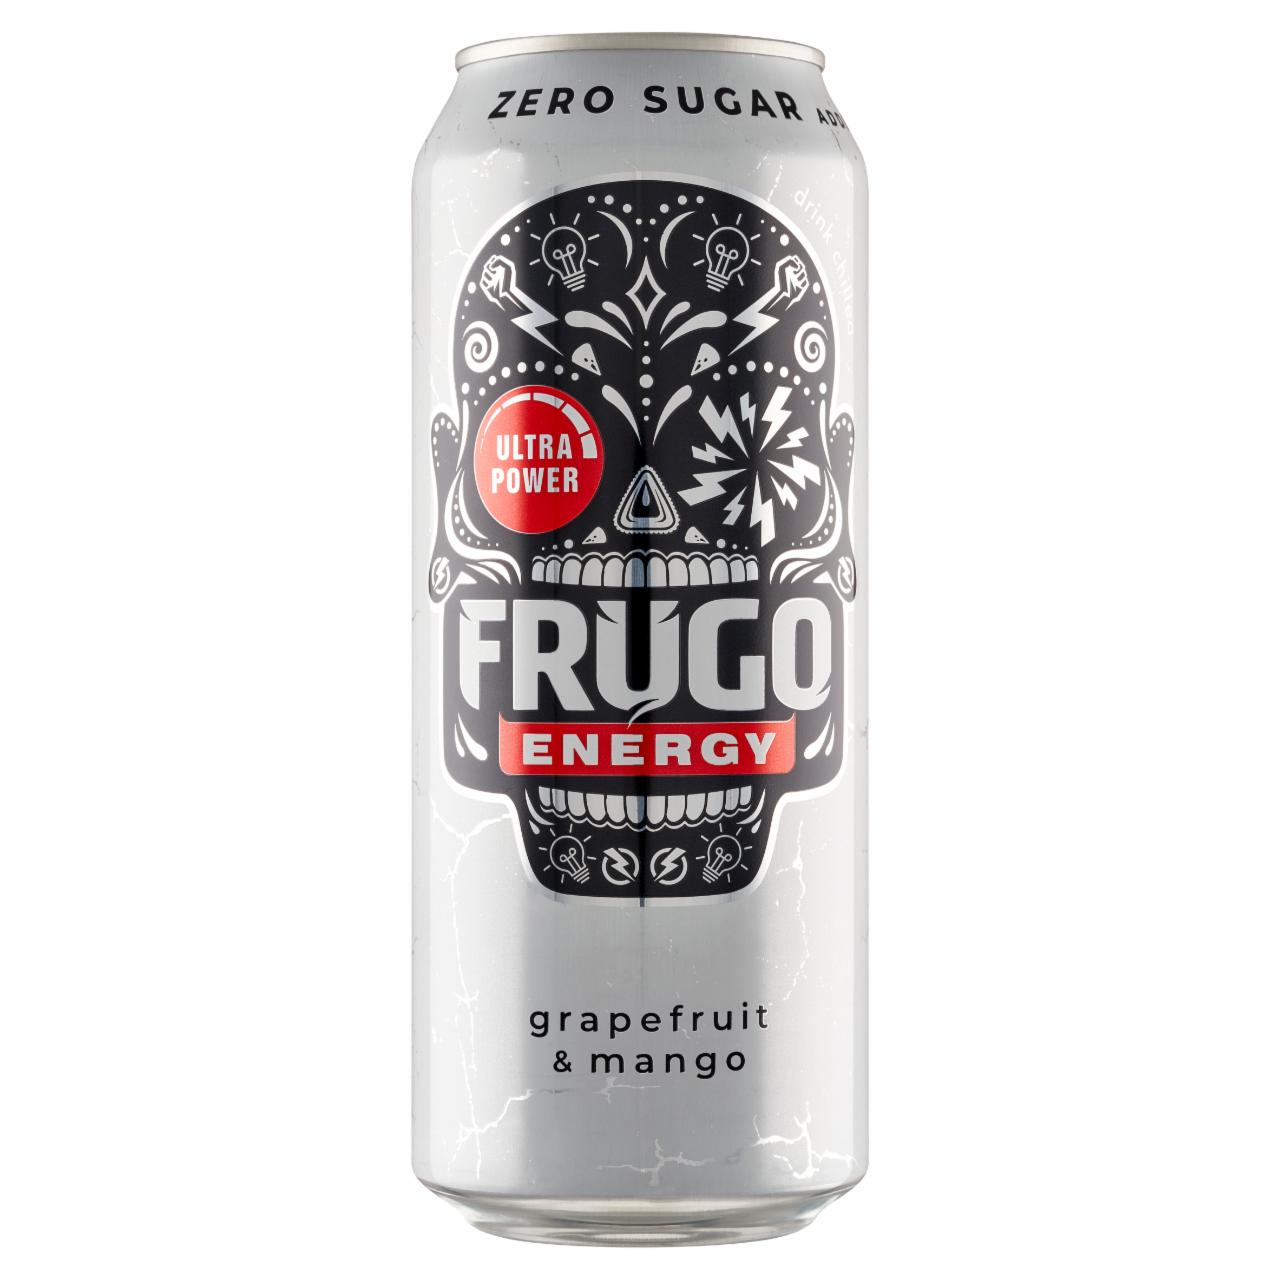 Zdjęcia - Frugo Energy Grapefruit & Mango Gazowany napój energetyzujący 500 ml